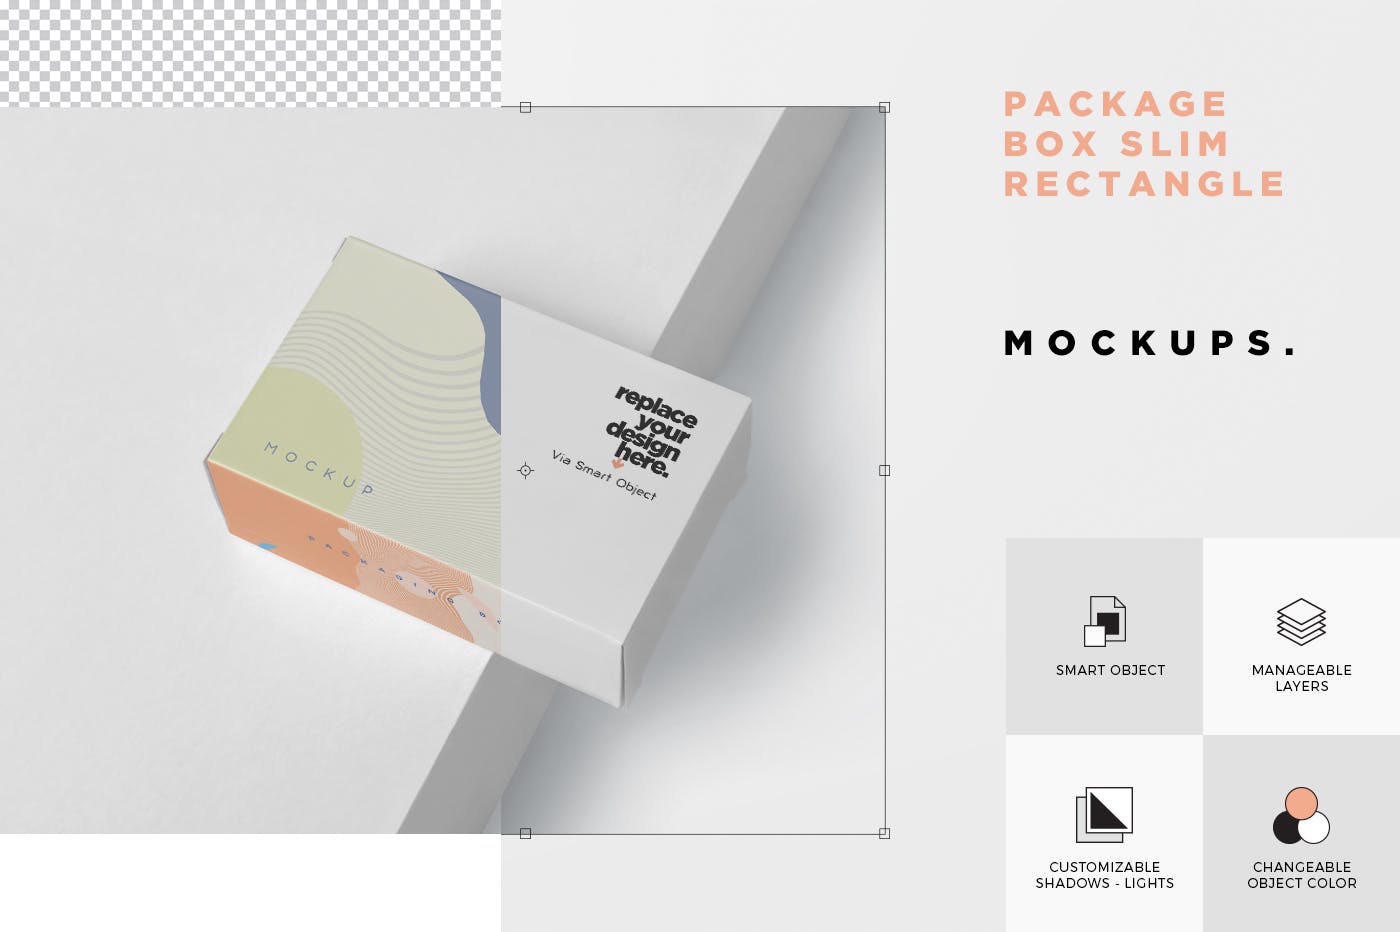 扁平矩形产品包装盒效果图素材中国精选 Package Box Mockup – Slim Rectangle Shape插图(6)